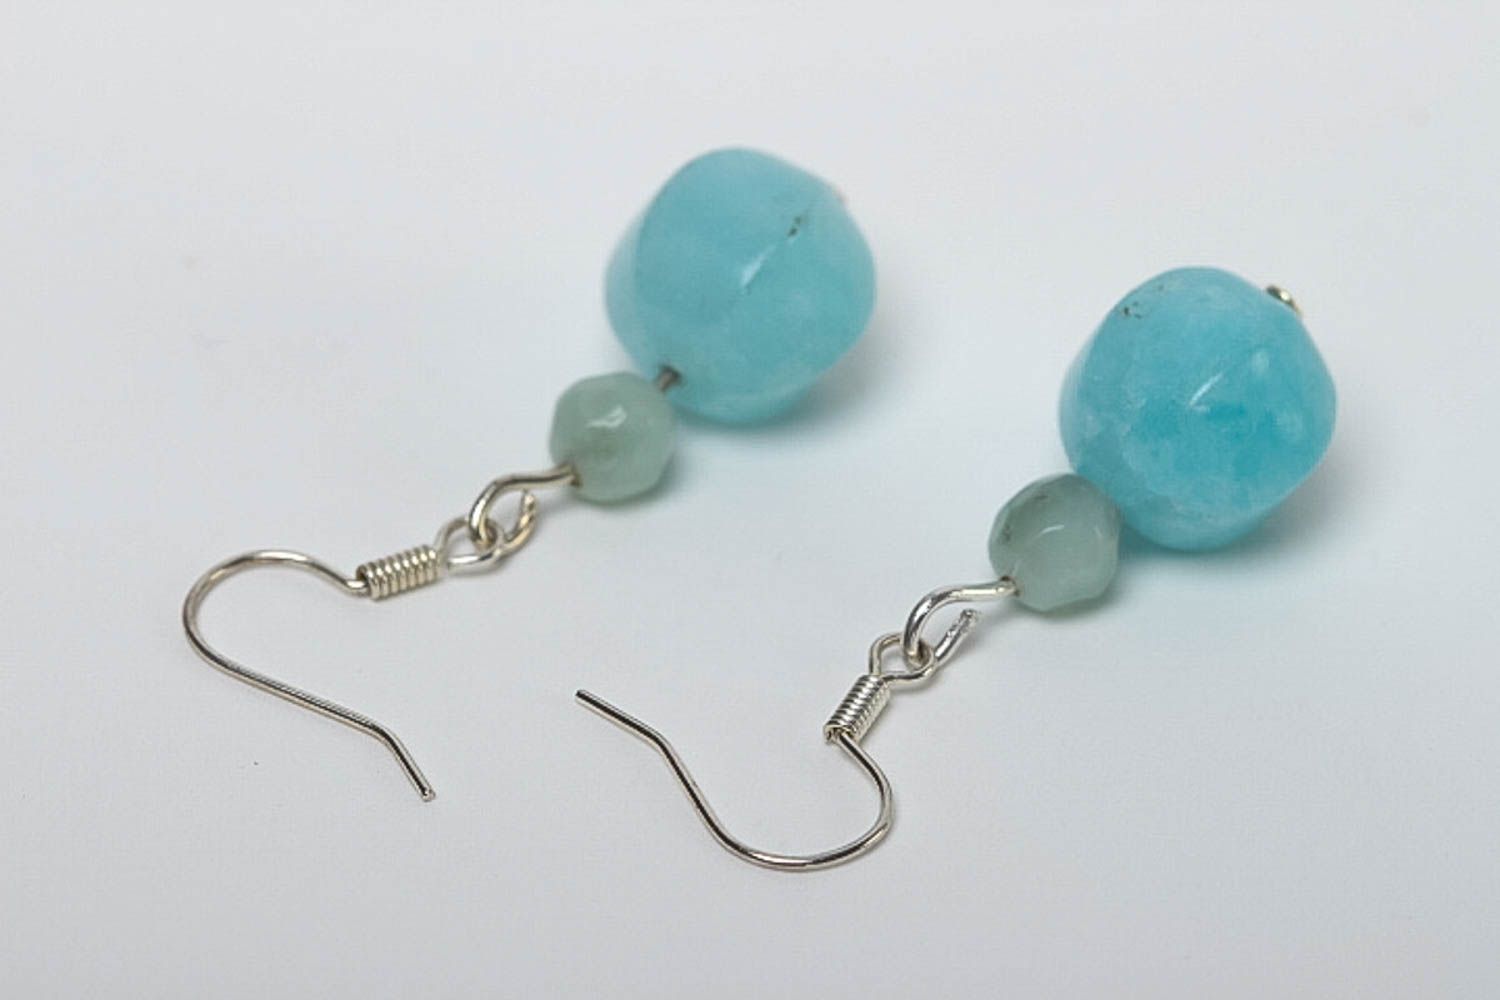 Handmade earrings gemstone jewelry dangling earrings fashion earrings gift ideas photo 4